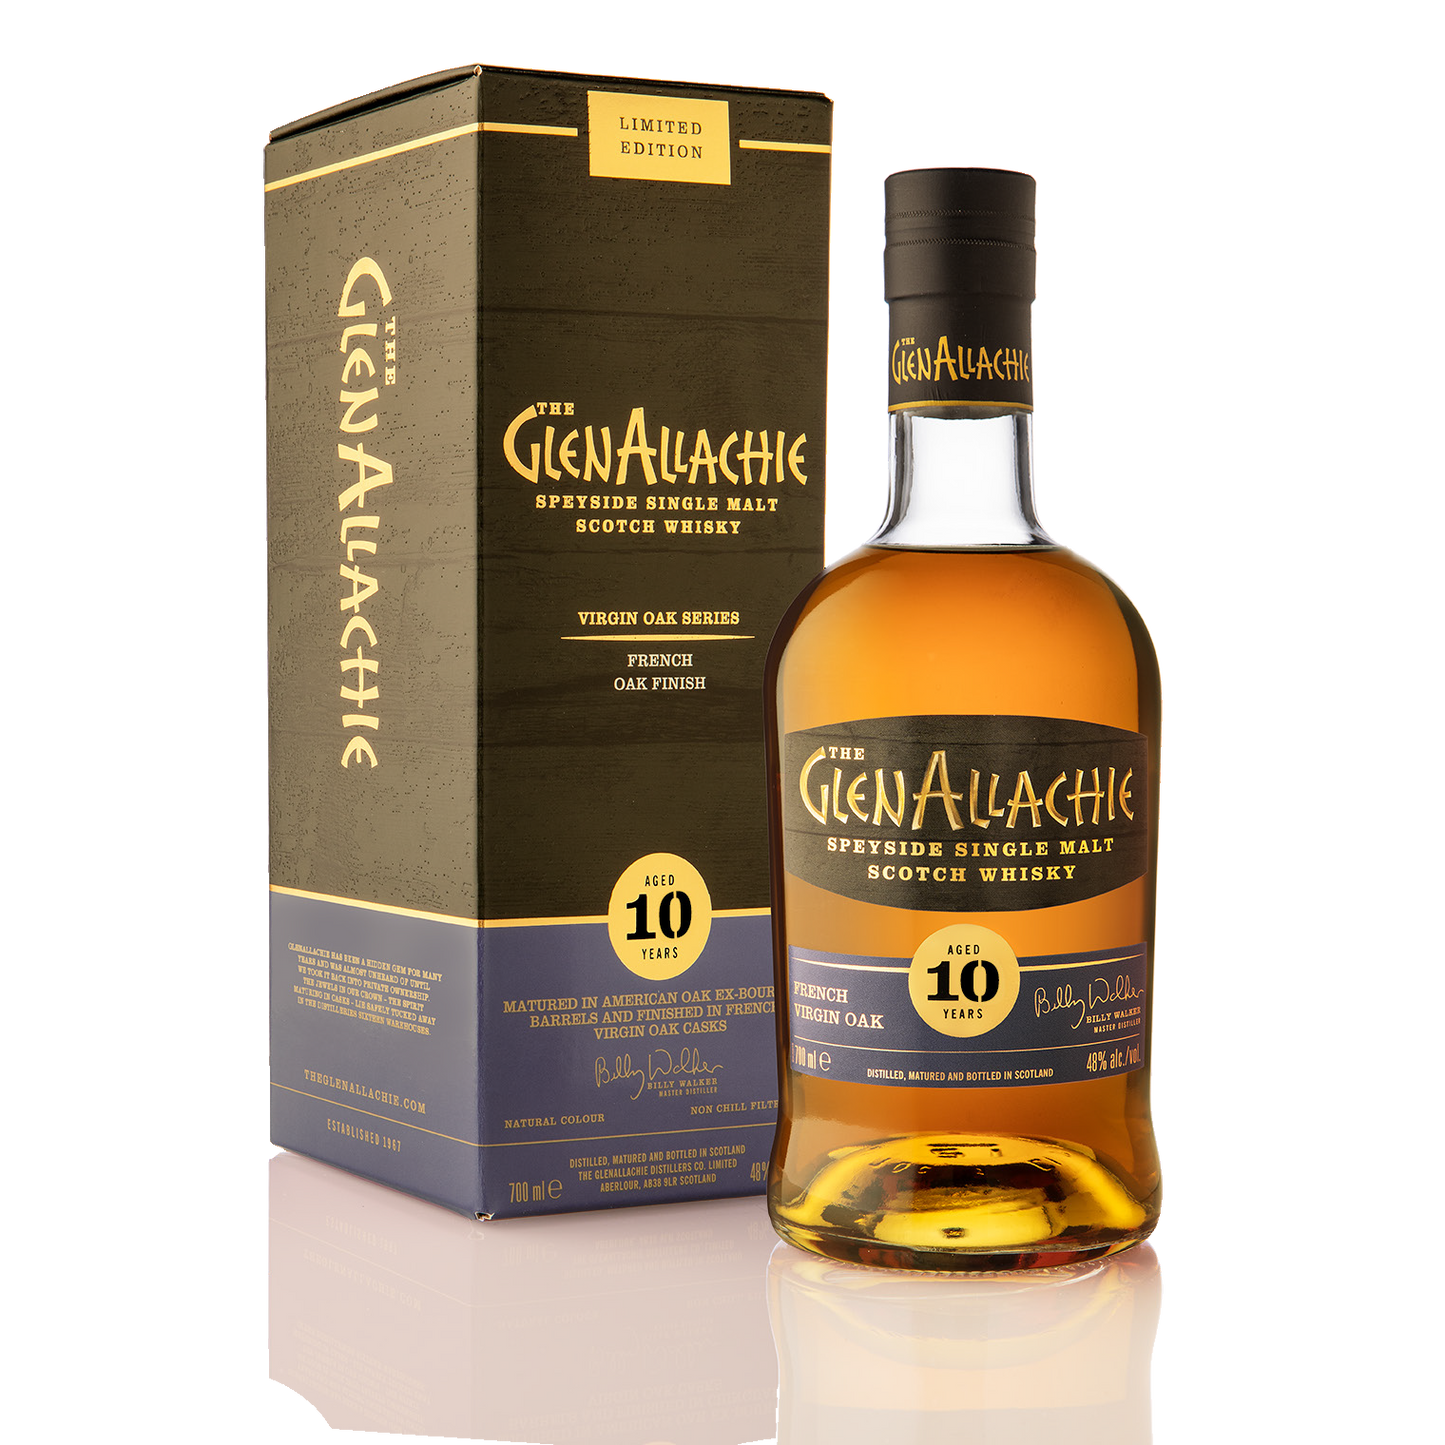 GlenAllachie Virgin Oak Series: French Virgin Oak 10 Year Old Limited Edition - Single Malt Scotch Whisky-Single Malt Scotch Whisky-5060568324845-Fountainhall Wines